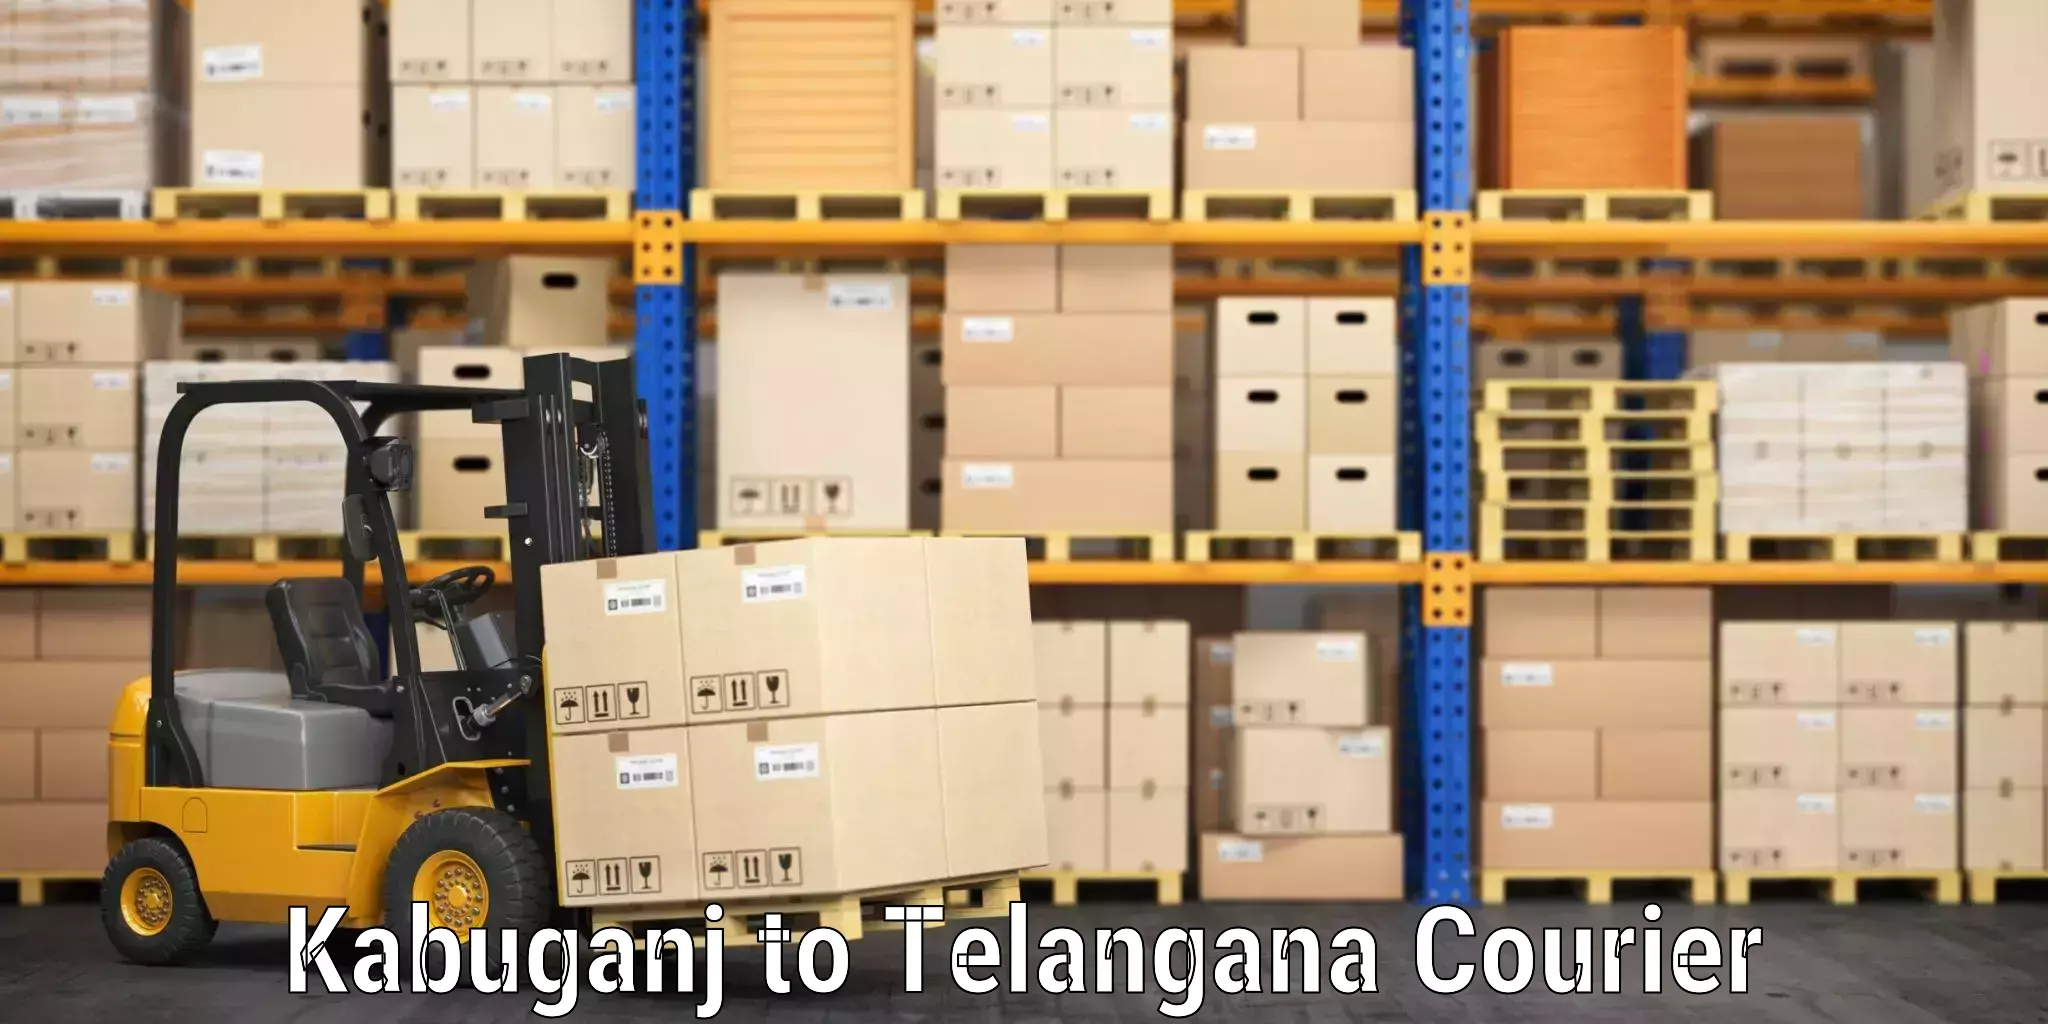 Luggage delivery news Kabuganj to Telangana